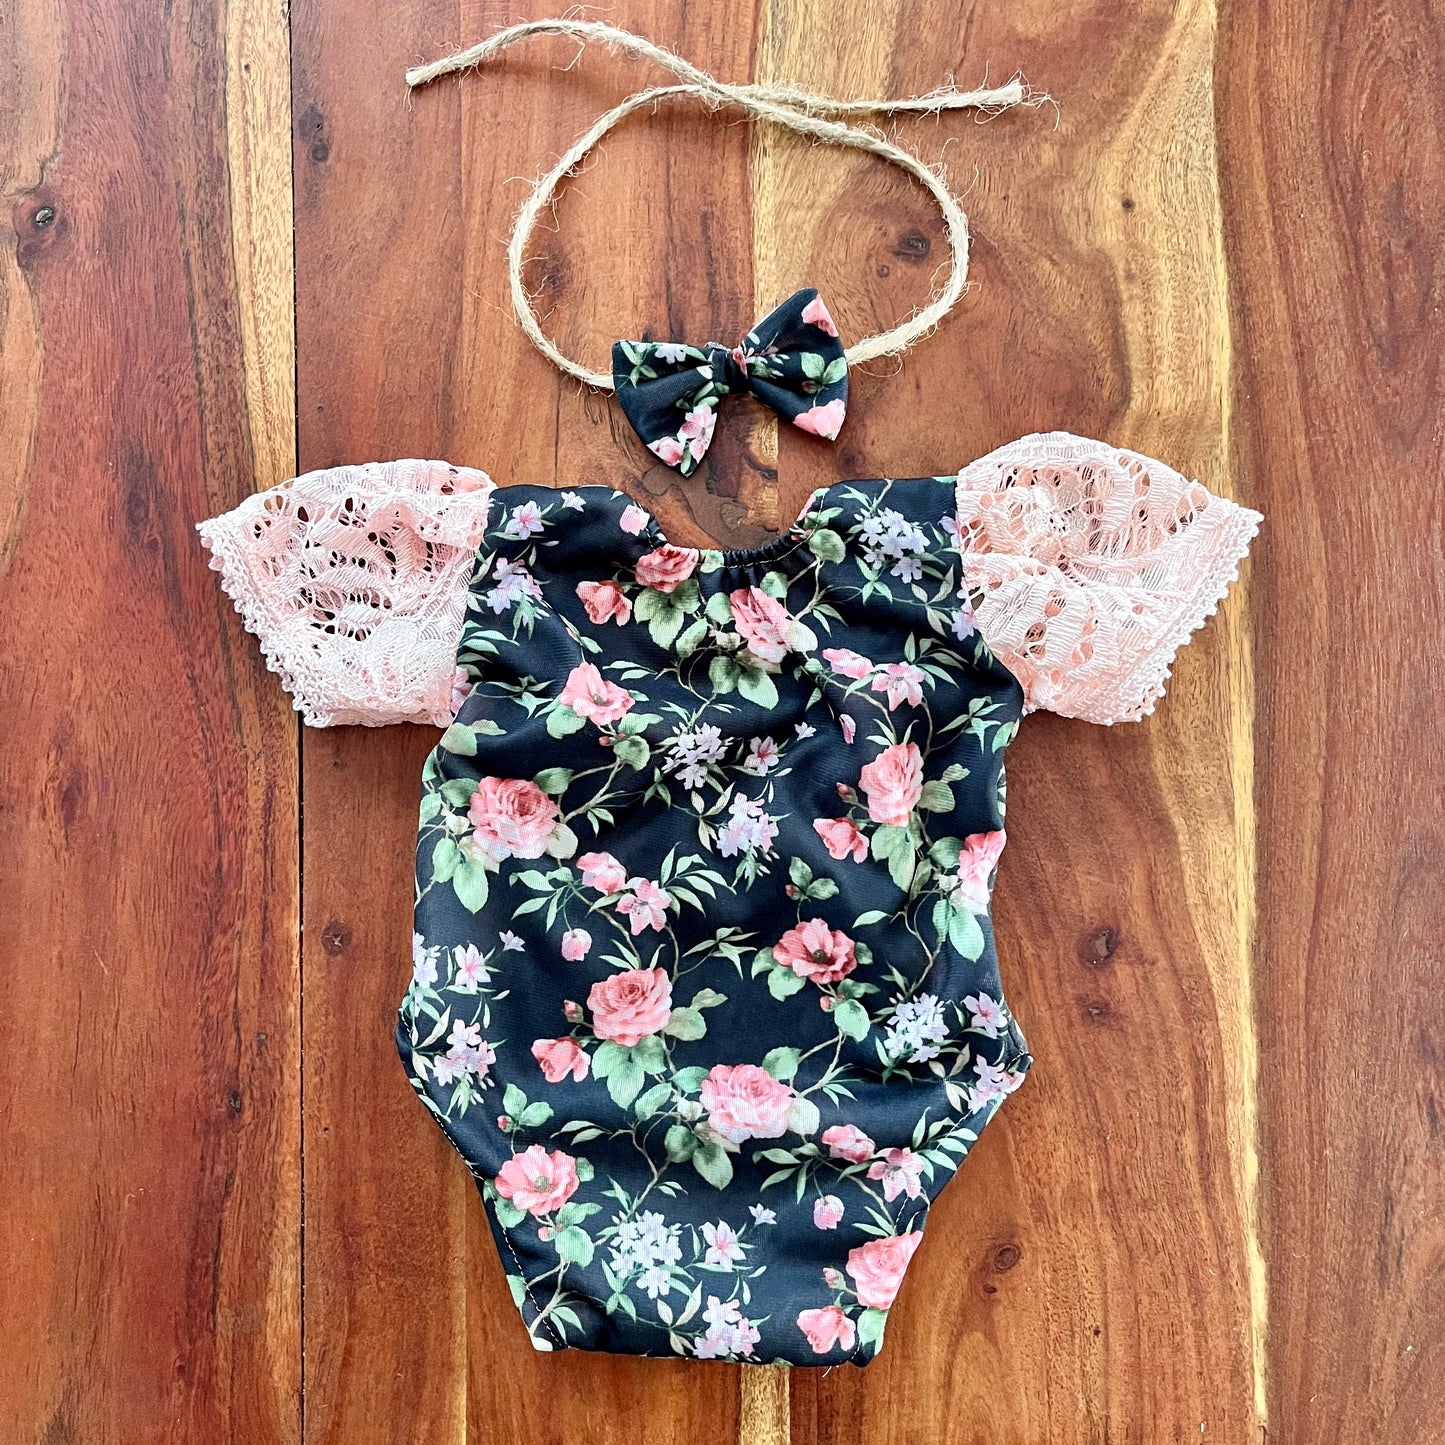 Monica Neugeborenen-Fotografie-Requisiten-Outfit für Mädchen